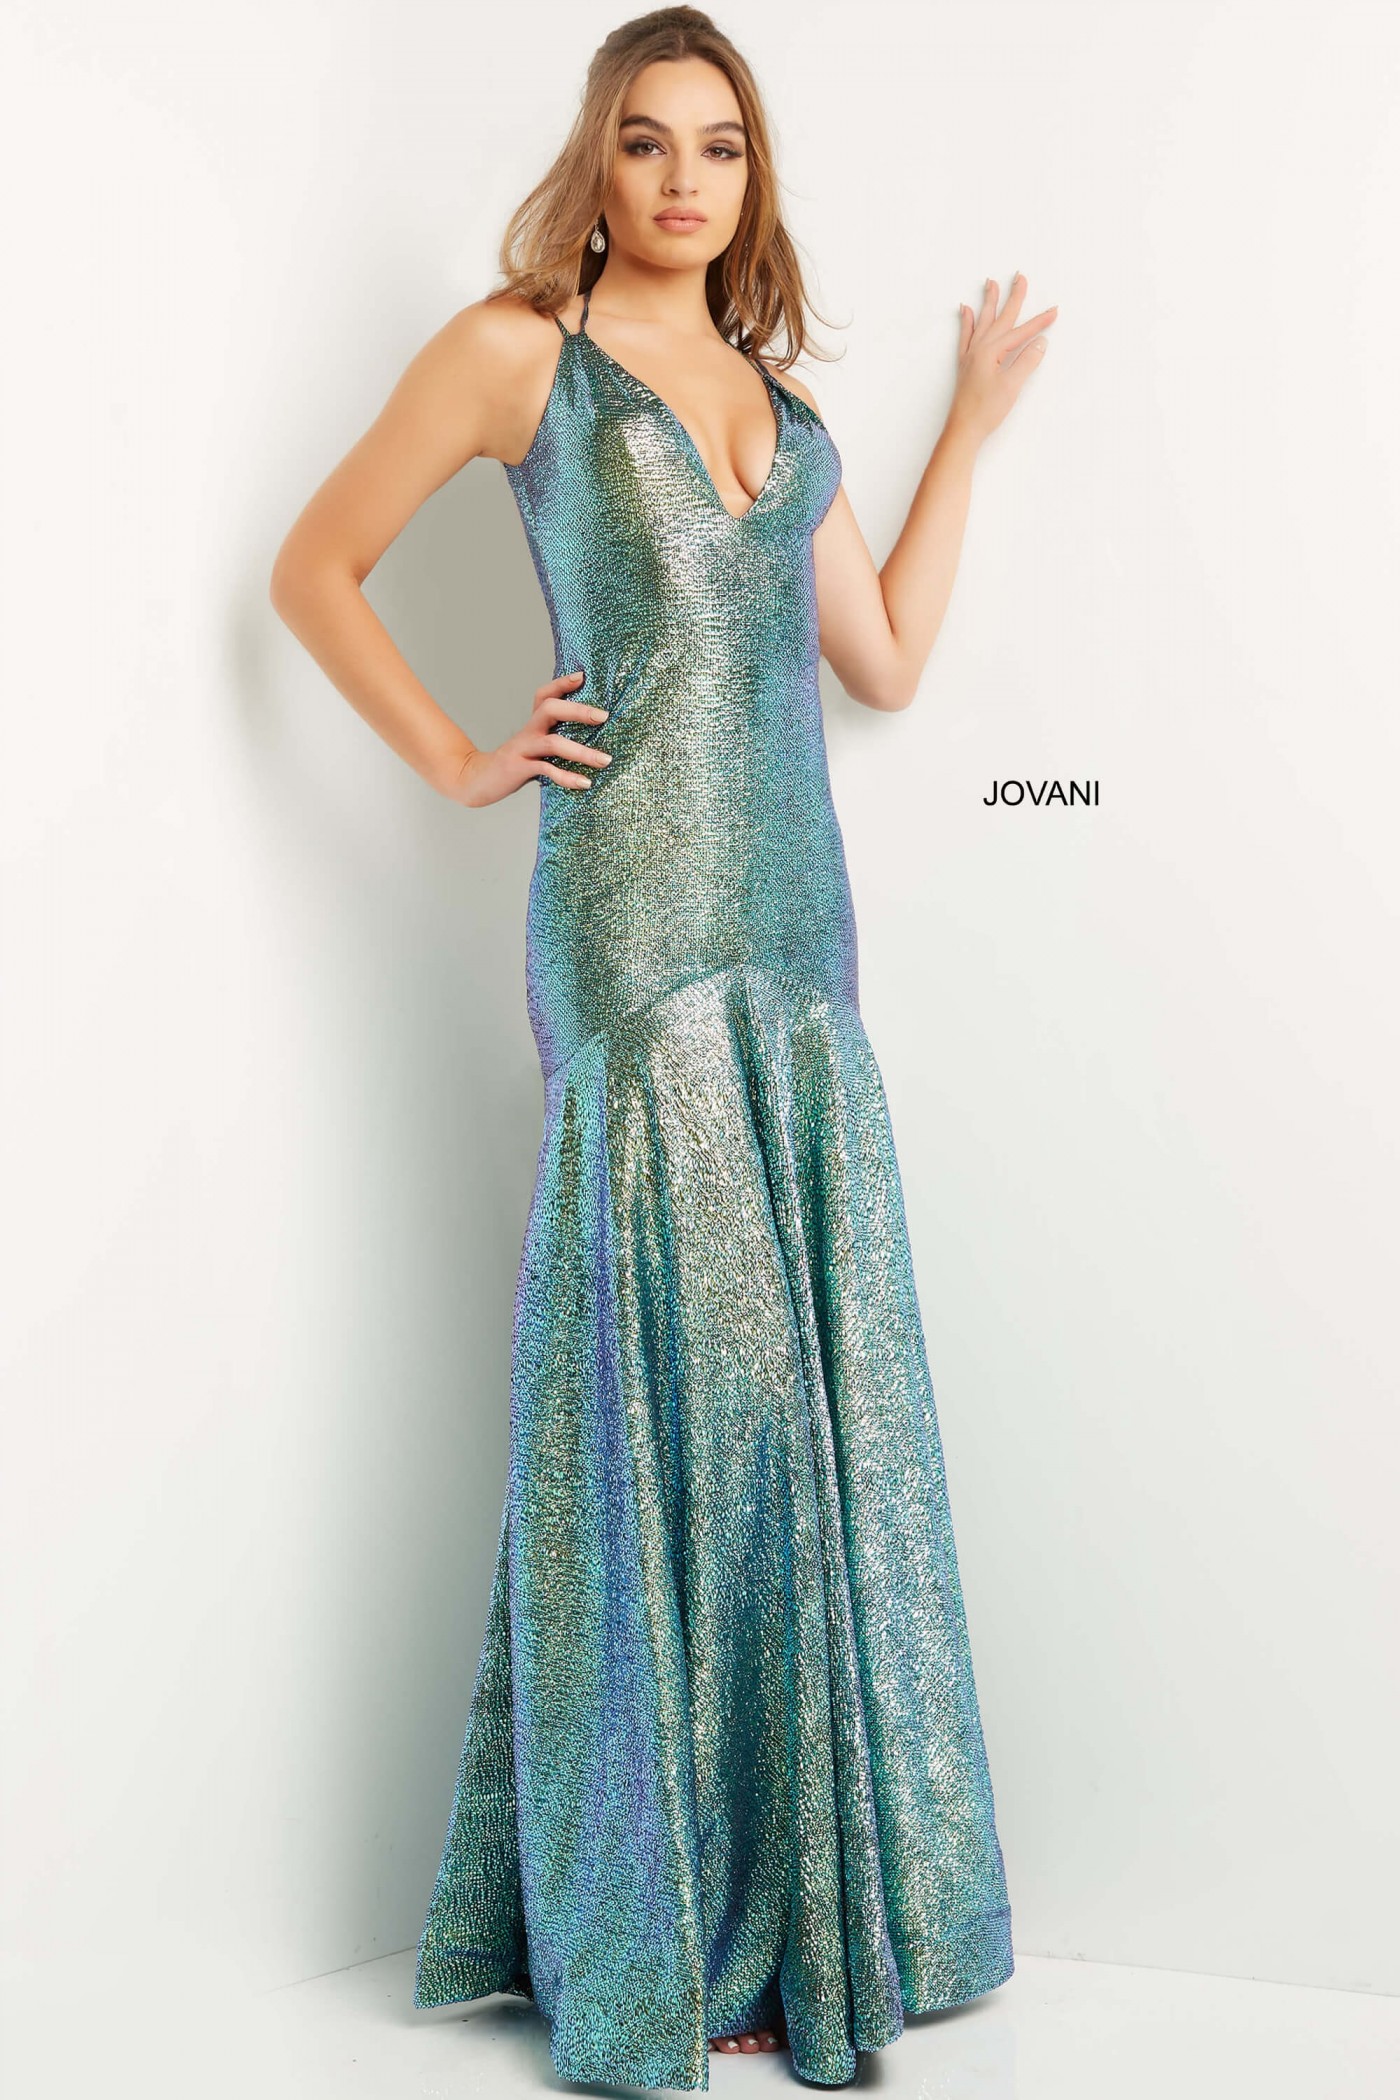 Jovani 08539 Green Multi Backless Metallic Prom Dress